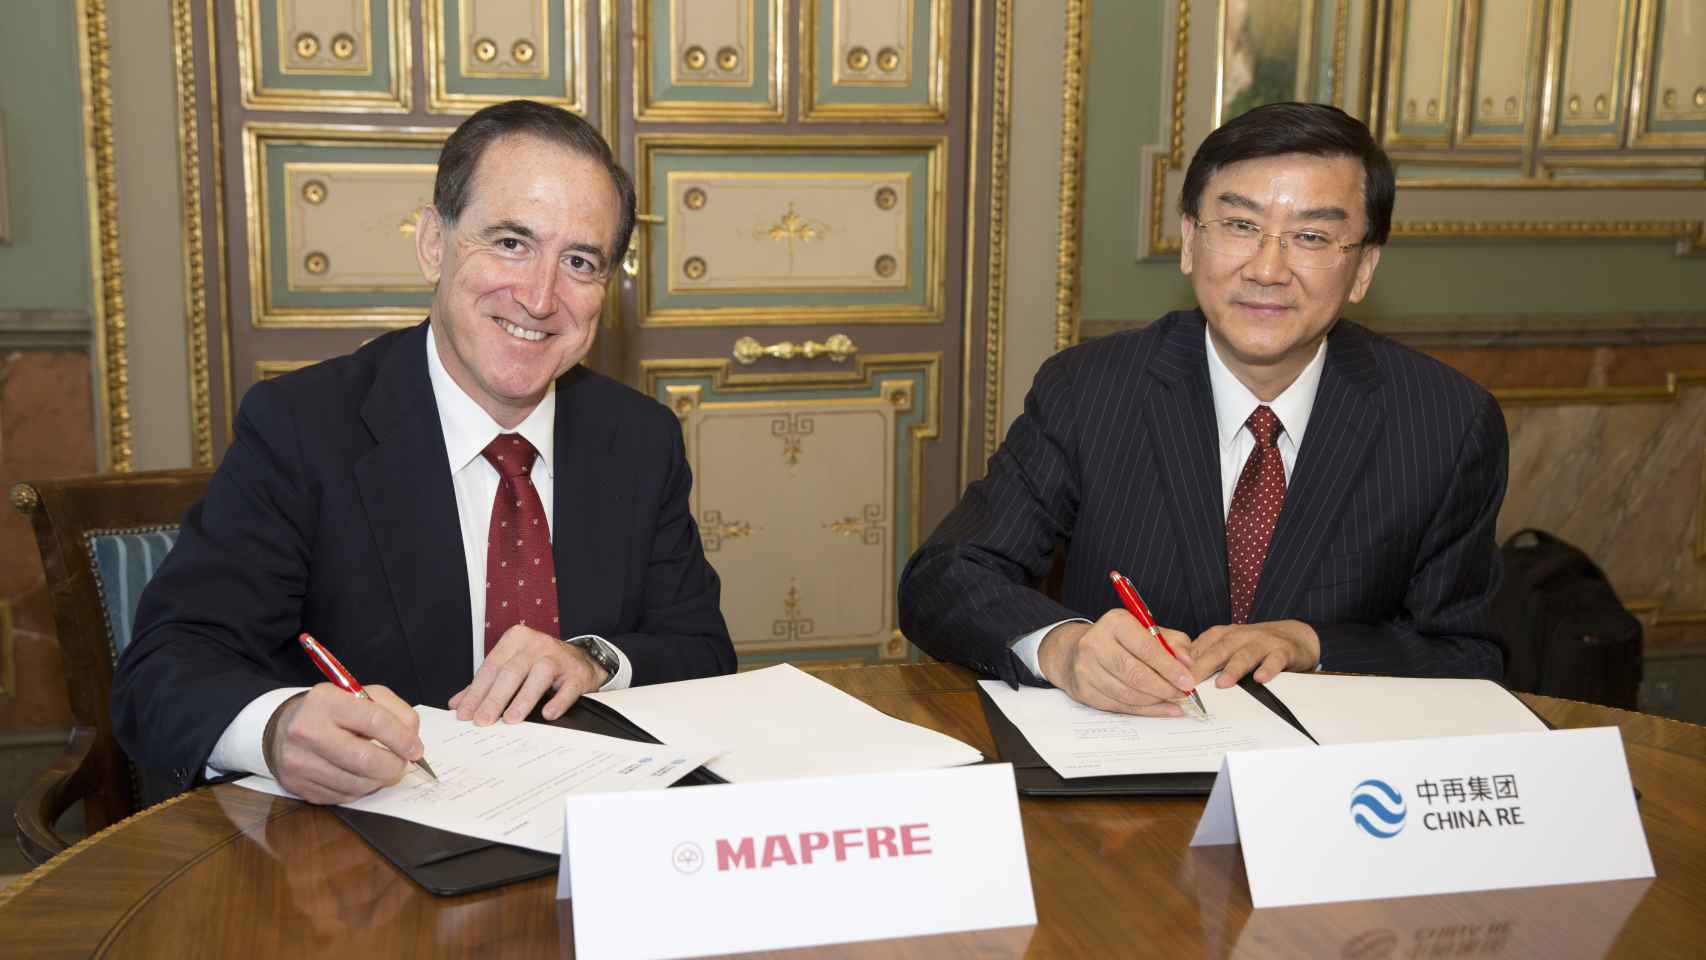 Mapfre ofrecerá apoyo asegurador a China Re en la Nueva Ruta de la Seda